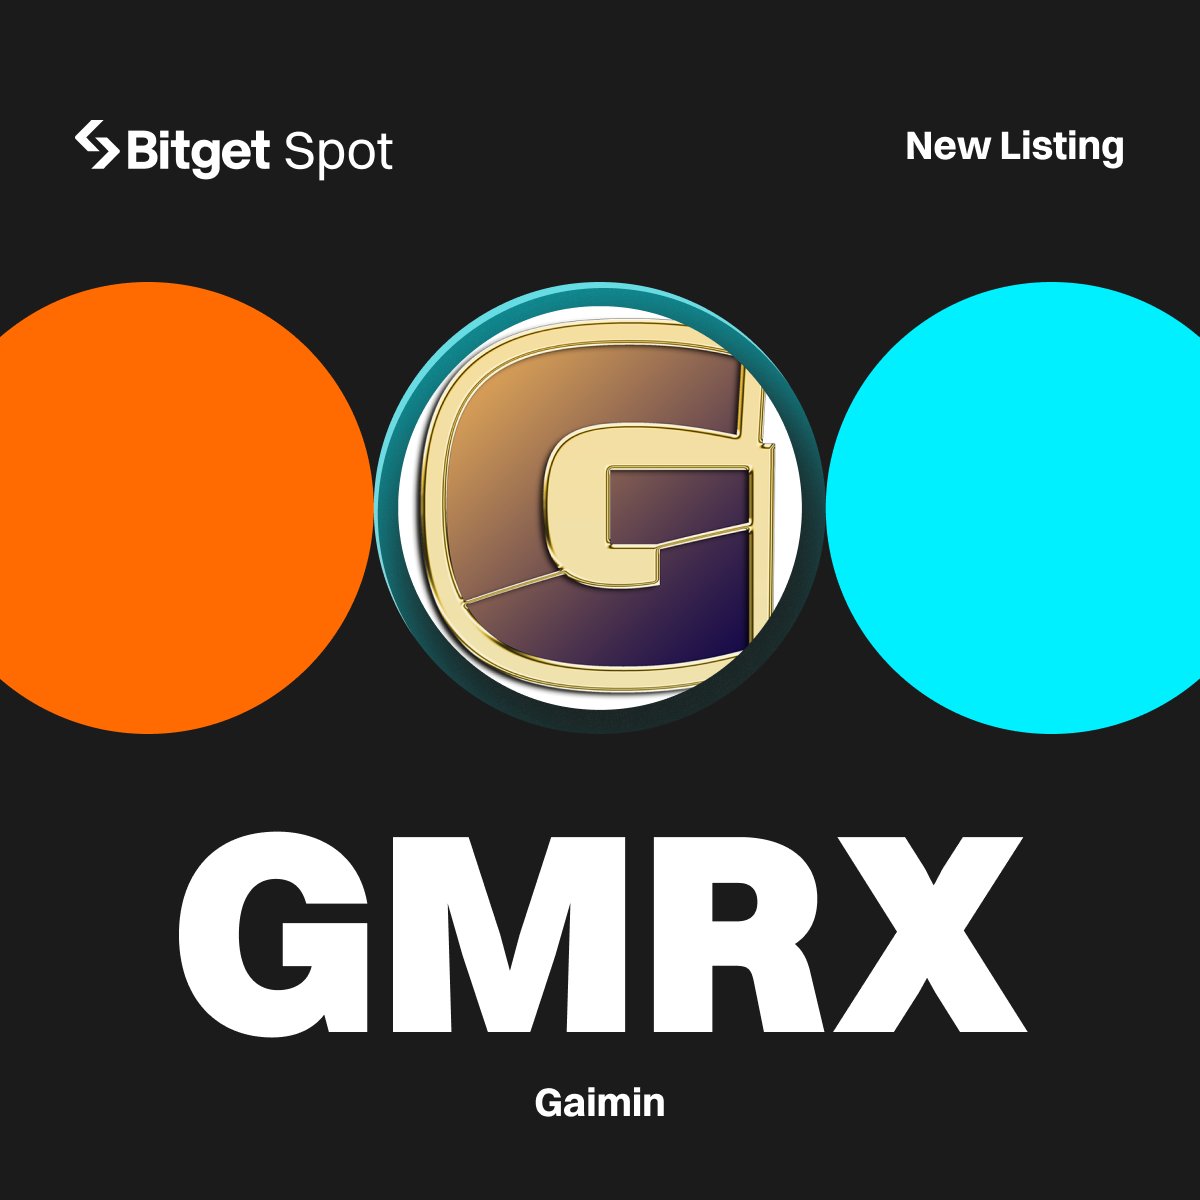 📢 New Listing - $GMRX @GaiminIo #Bitget will list GMRX/USDT with 750,000 GMRX up for grabs! 🔹Deposit: opened 🔹Trading starts: 11:00 AM, April 3 (UTC) More details: bitget.com/en/support/art… #GMRXListBitget